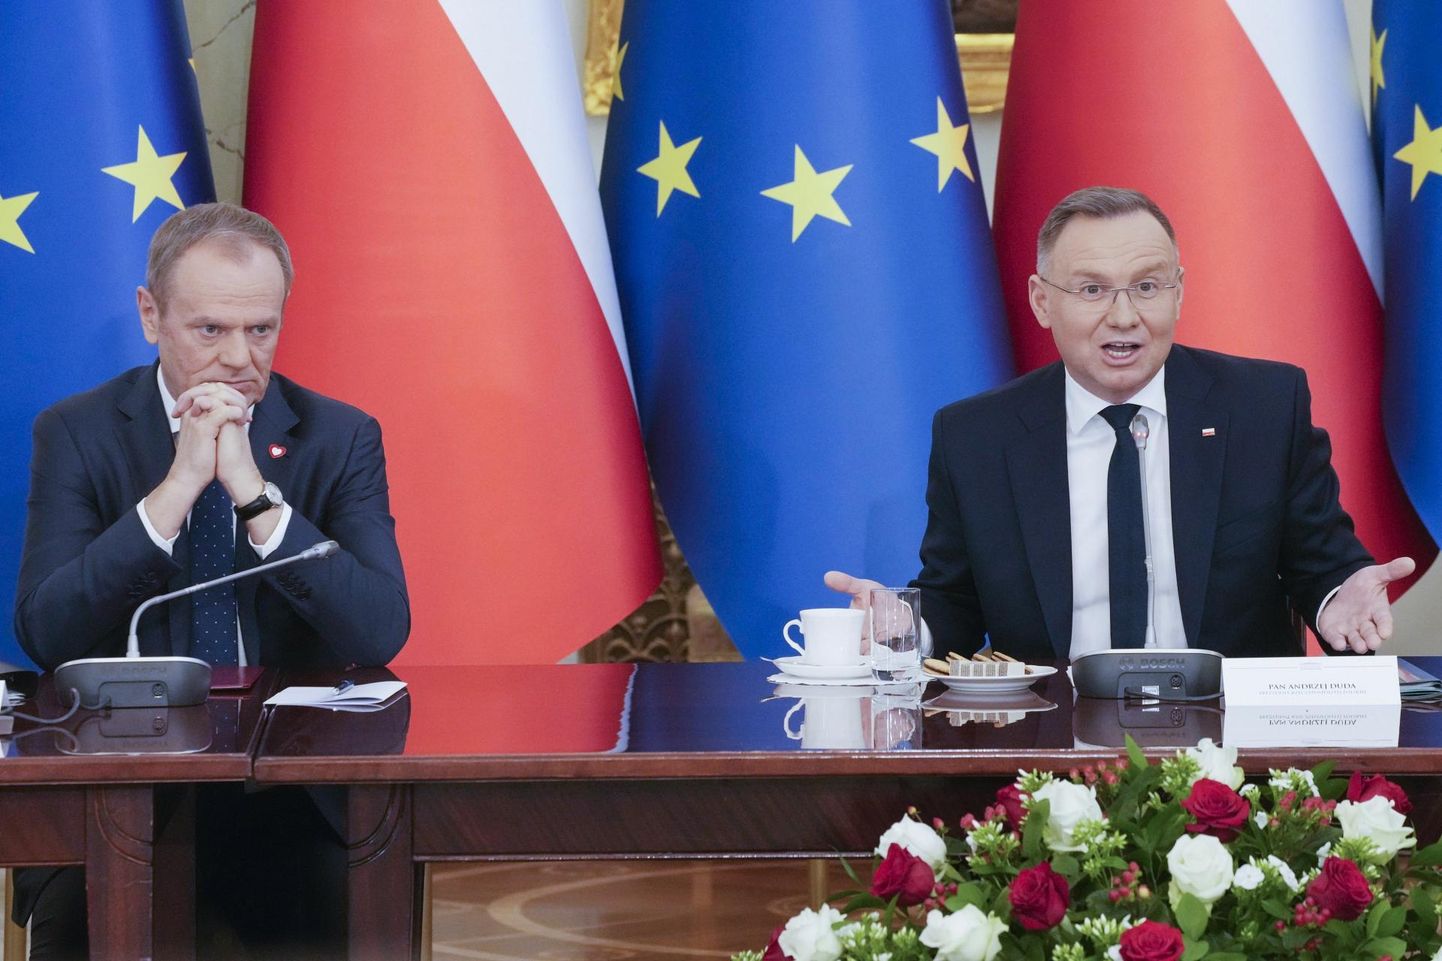 Poola peaminister Donald Tusk (vasakul) ja president Andrzej Duda 12. veebruaril toimunud valitsuskabineti ja presidendi ühiskohtumise järel Varssavis. FOTO: Czarek Sokolowski/AP/SCANPIX